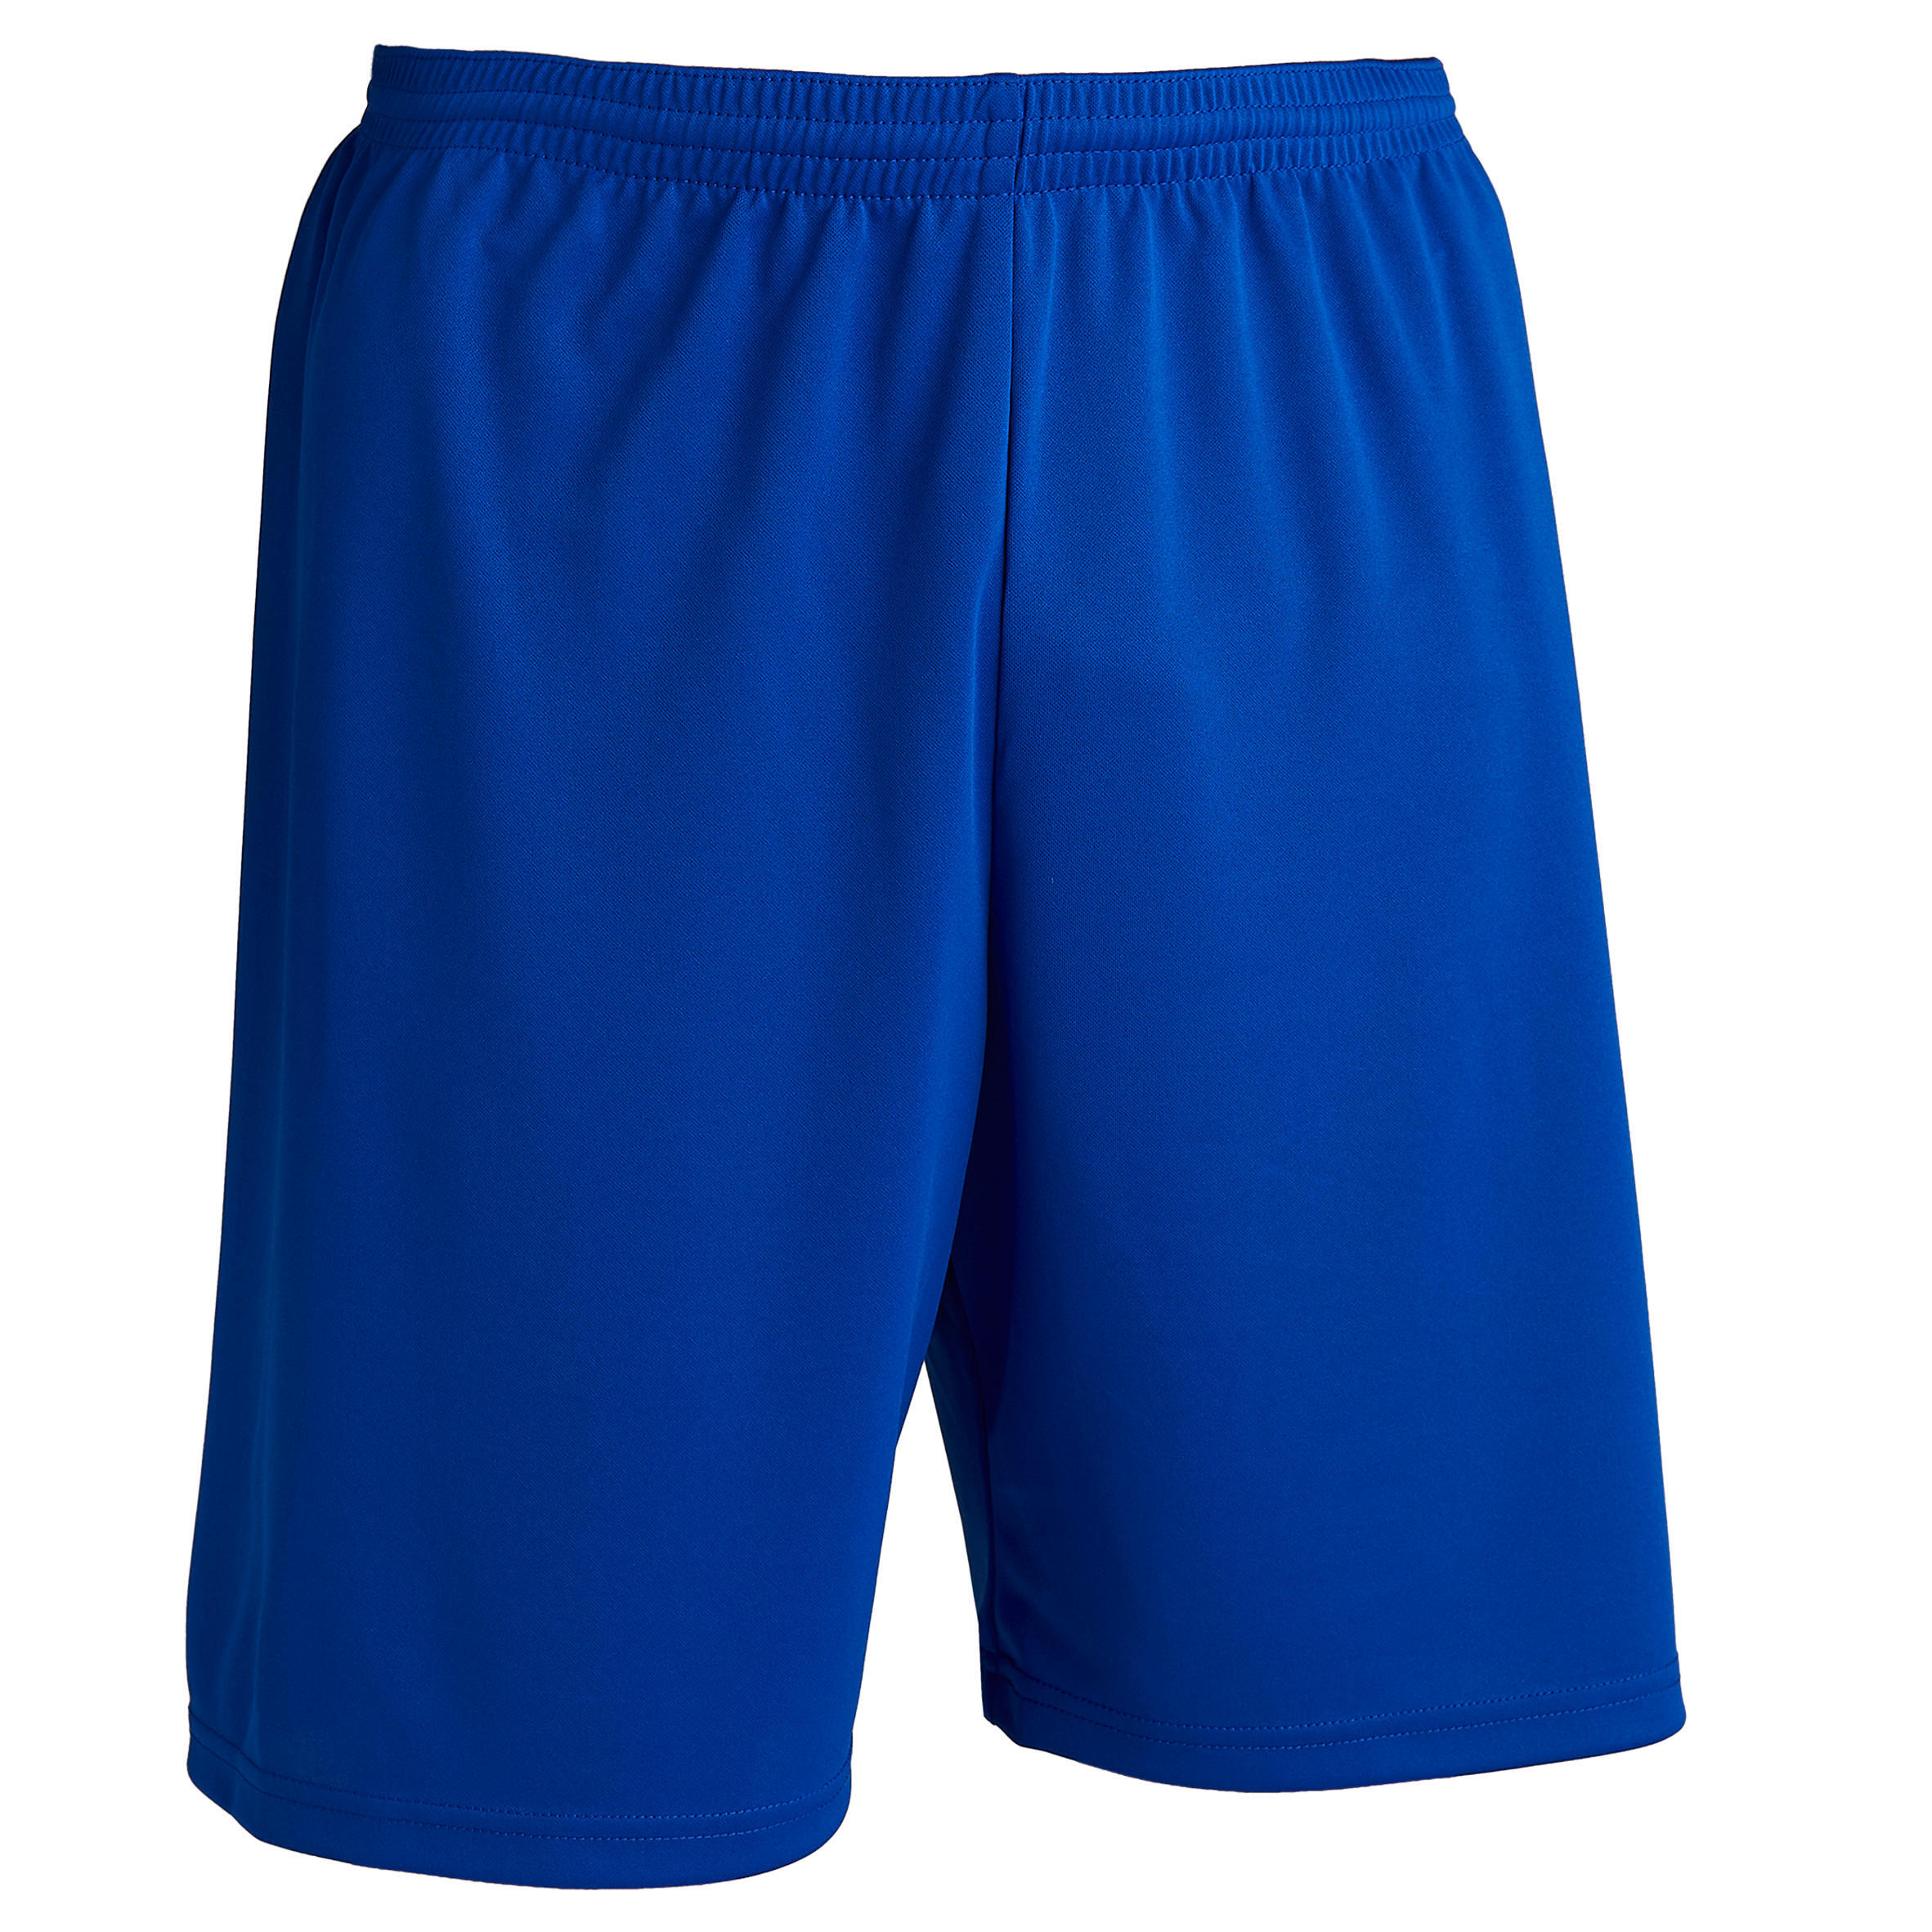 Штаны футбольные F100 Ecodesign взрослые синие KIPSTA, индиго